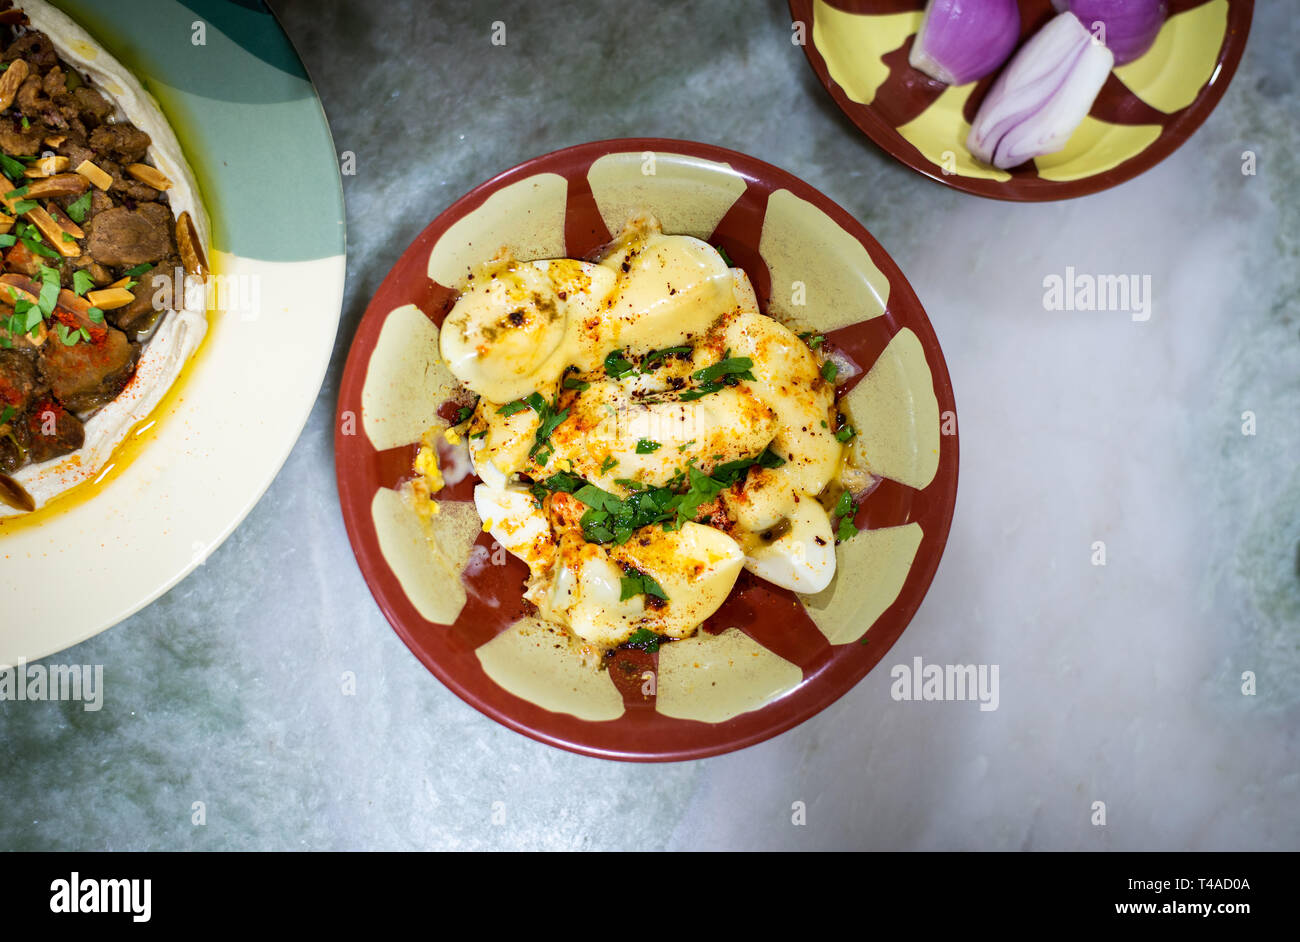 Eier mit Käse und arabische Speisen auf dem Tisch, Ansicht von oben Stockfoto